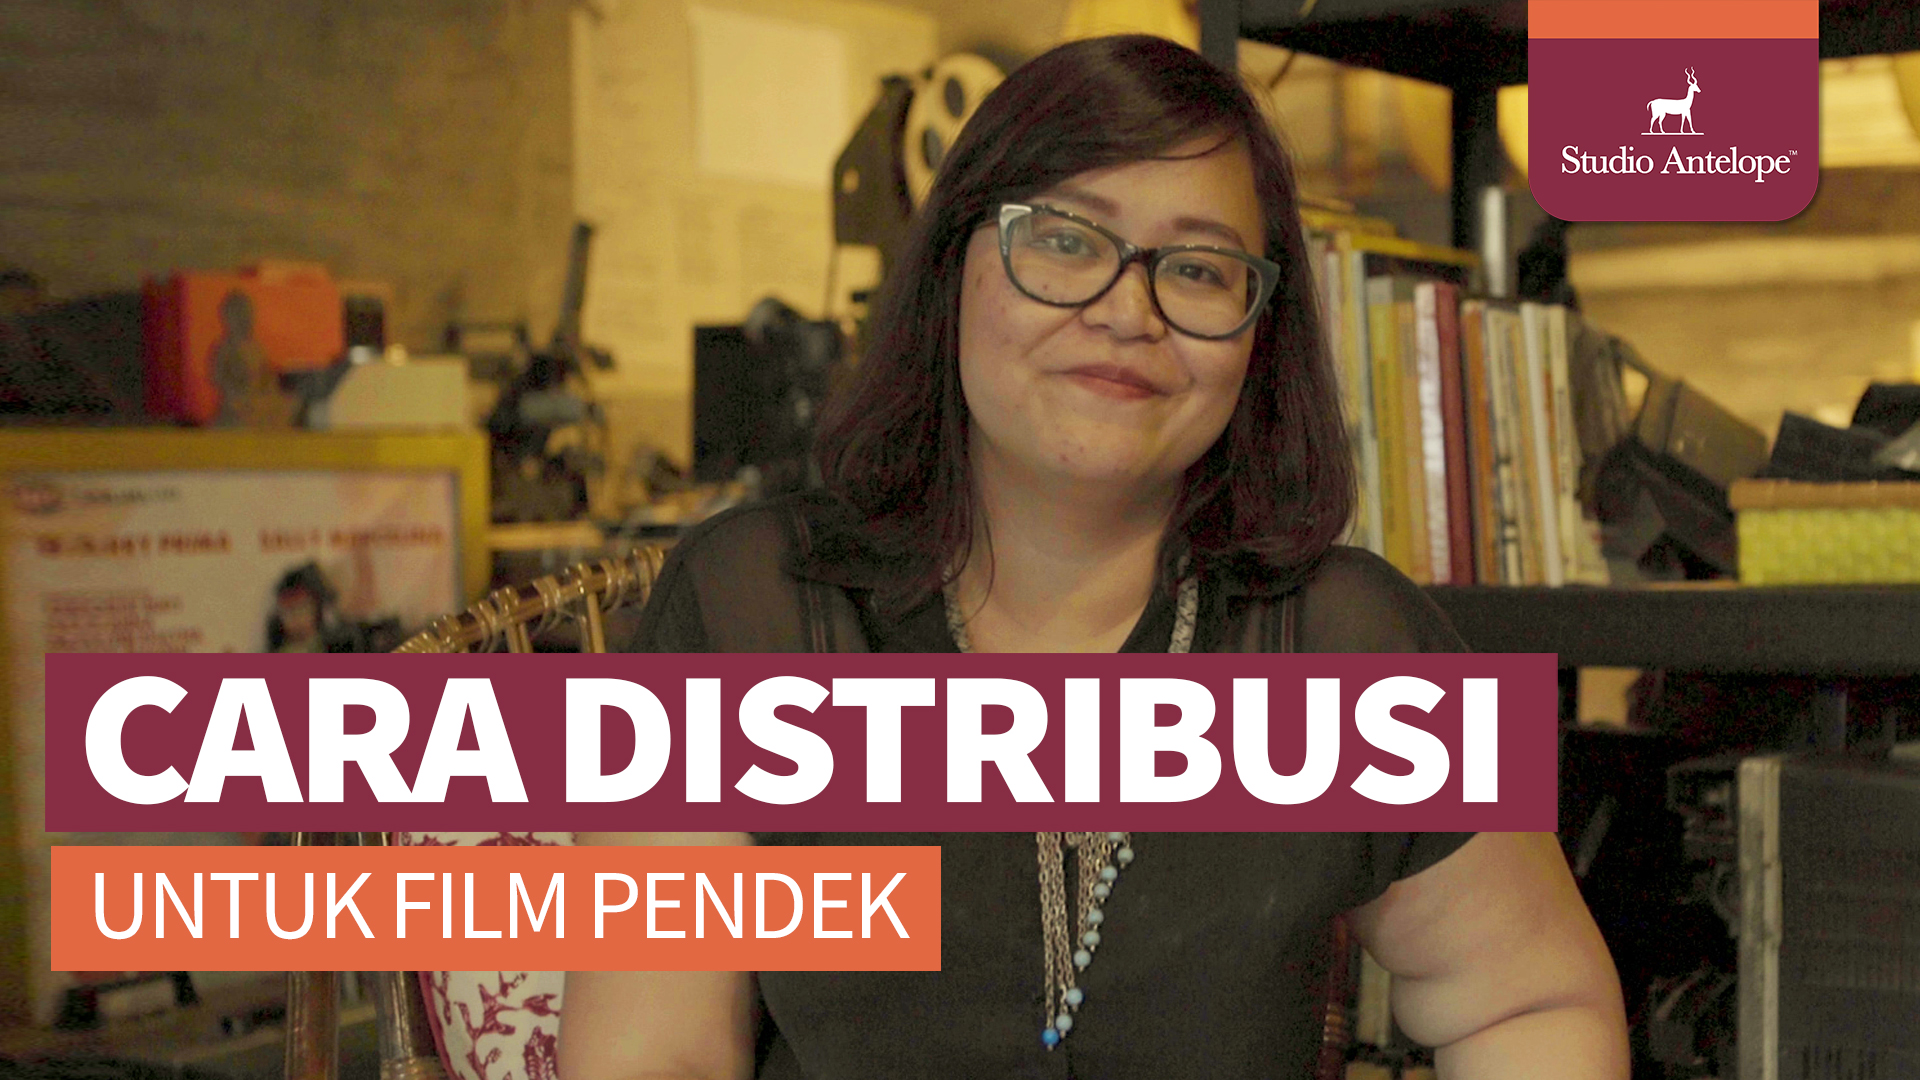 Gayatri Nadia dari Kolektif Film membicarakan cara distribusi film pendek